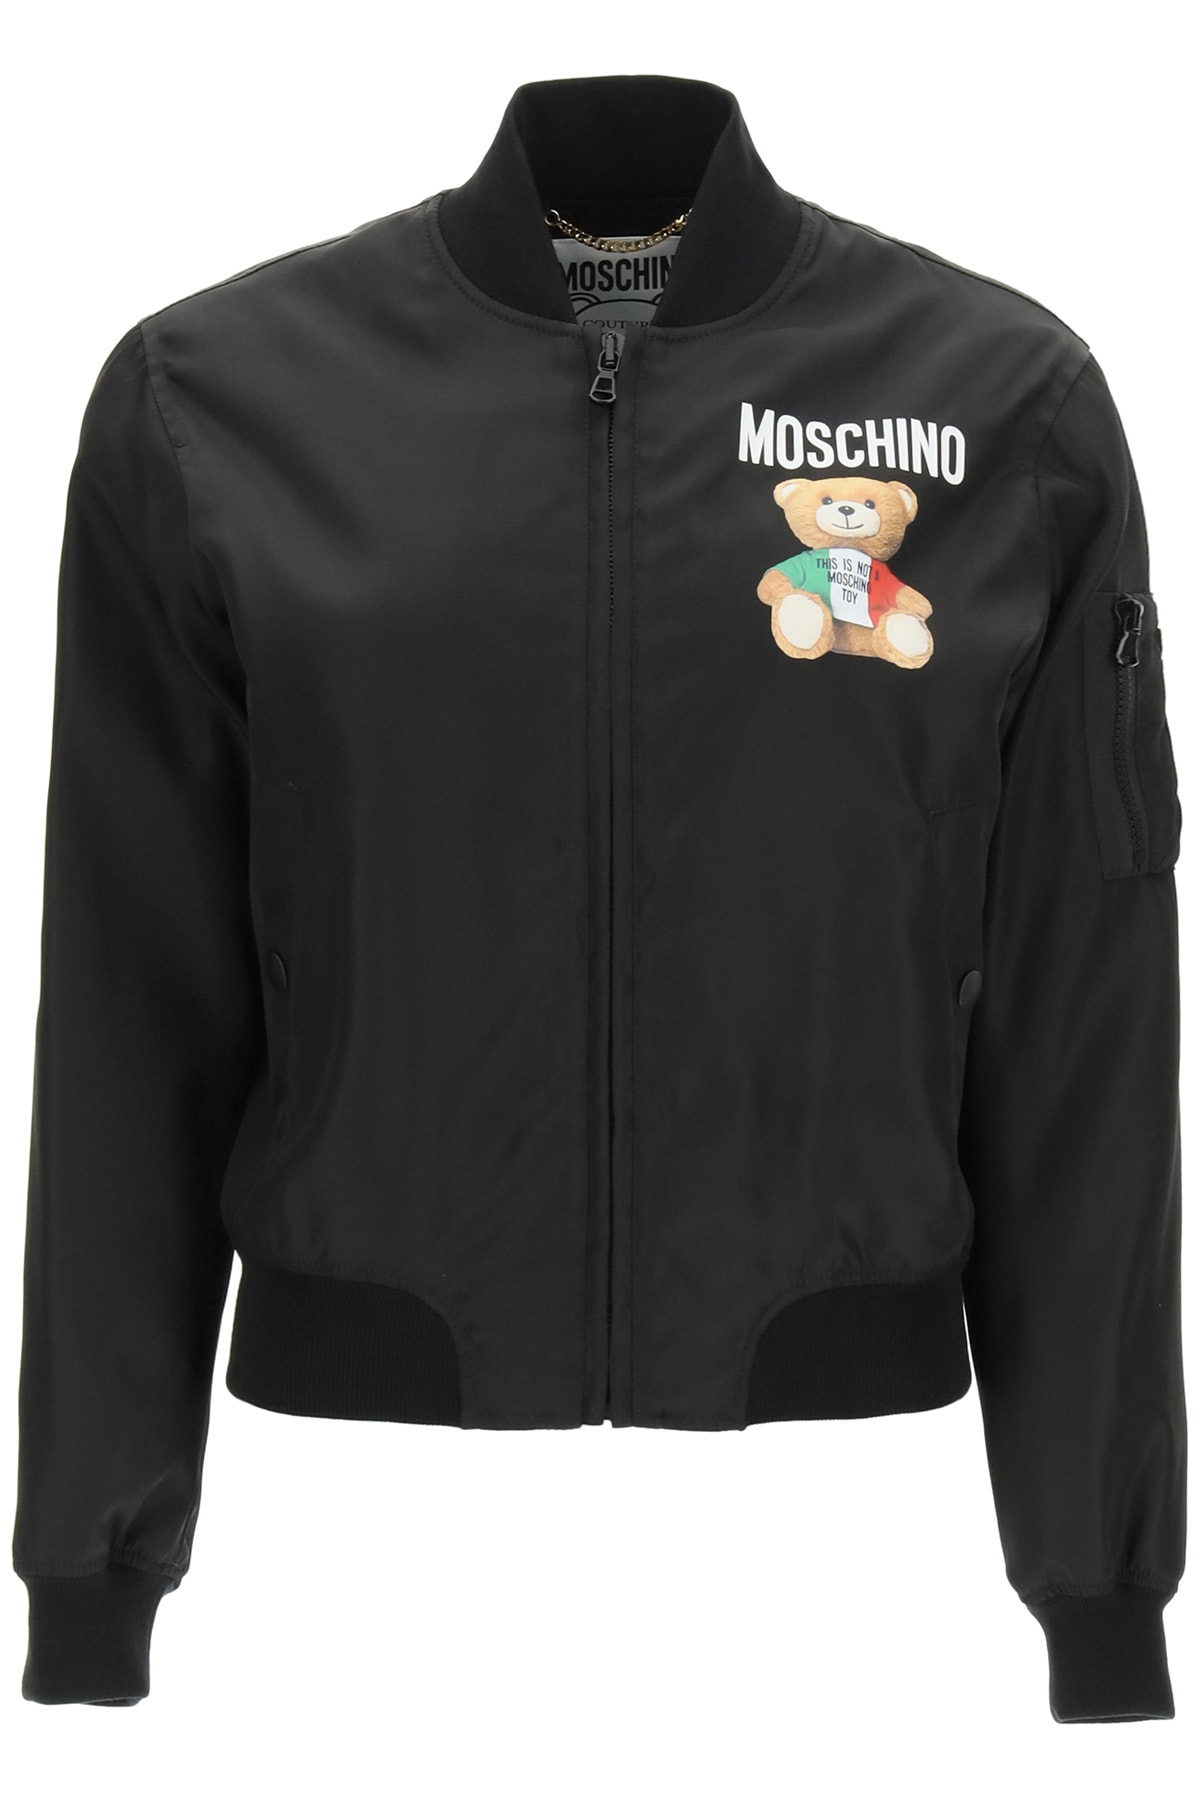 Moschino Nylon Bomber Jacket Italian Teddy Bear